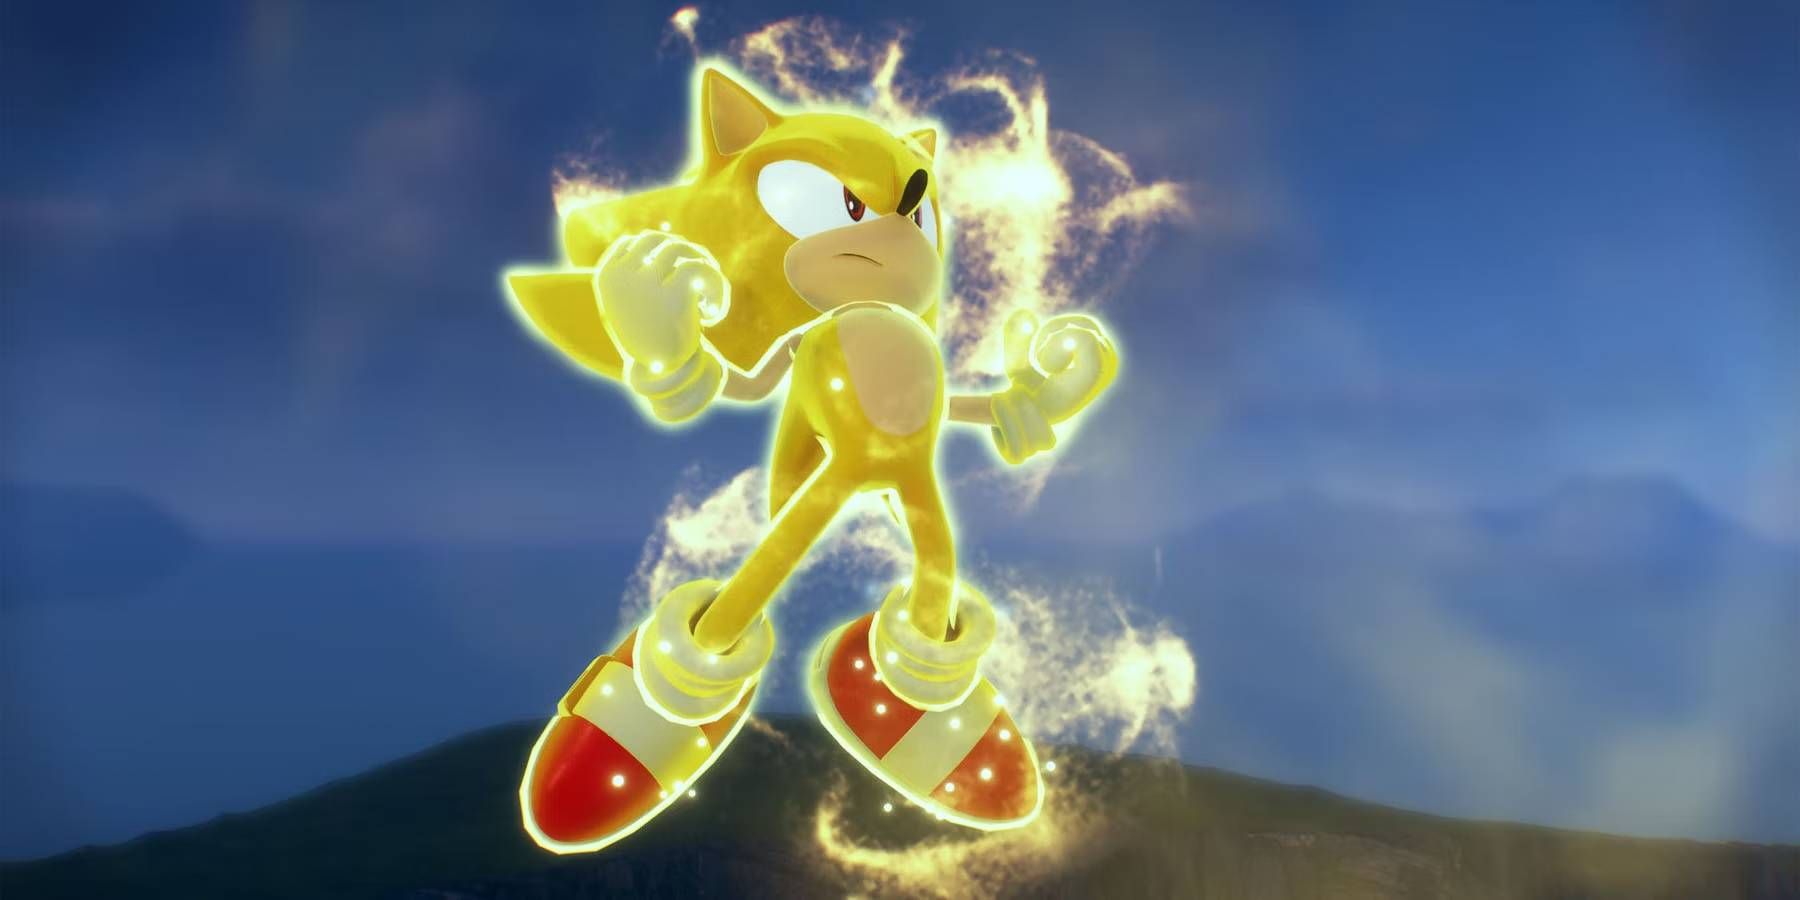 Super/Hyper Sonic Ultimate: Final Horizon Update [Sonic Frontiers] [Mods]